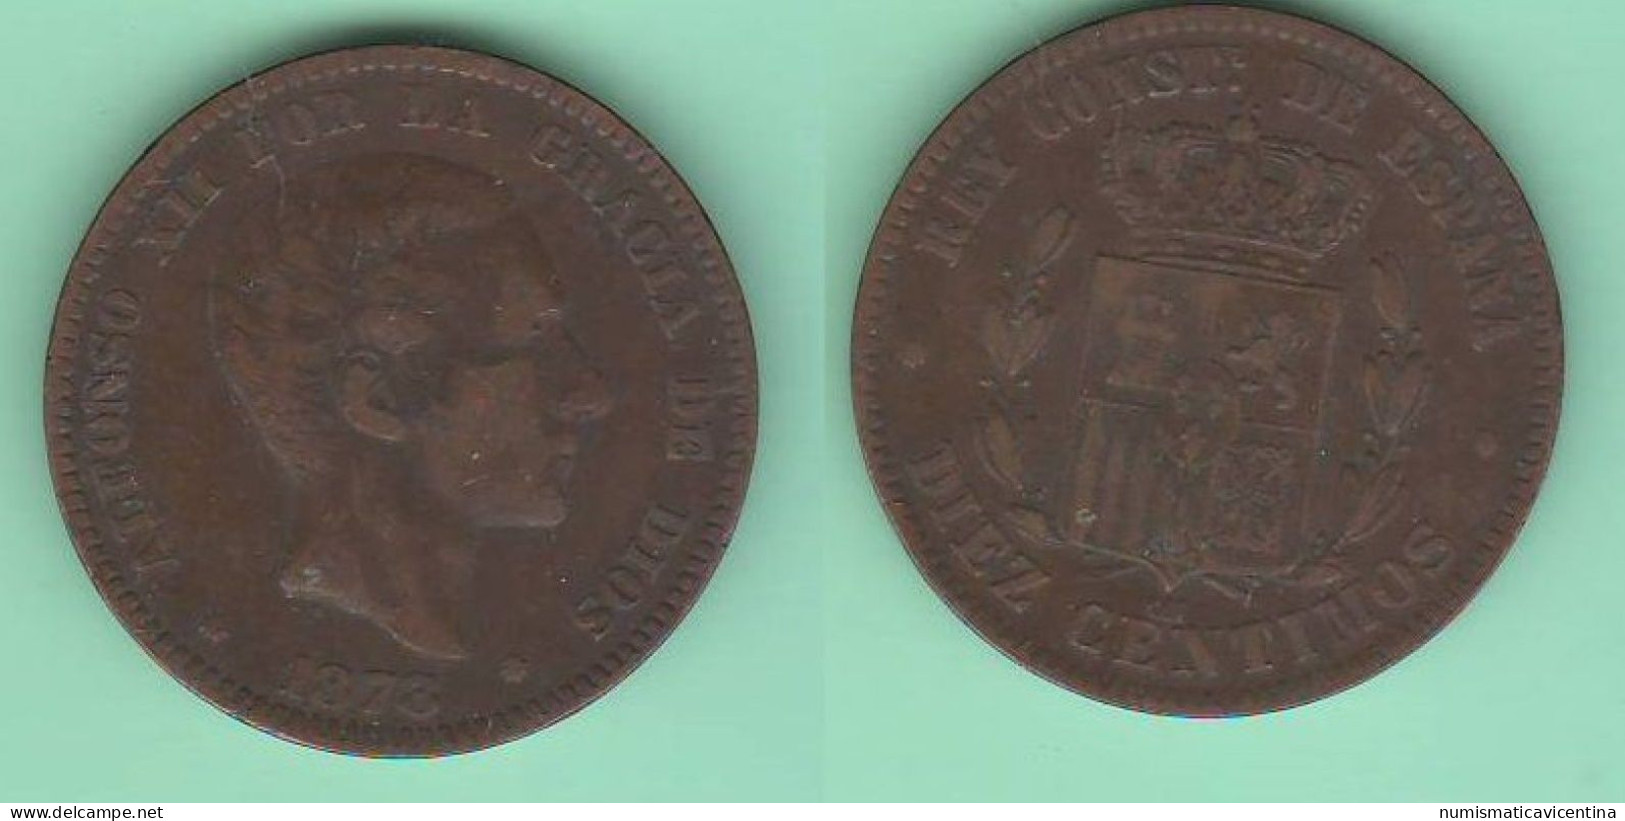 Spagna 10 Centimos 1878 Alfonso XII Espana Spain Espagne Bronze Coin - Monedas Provinciales